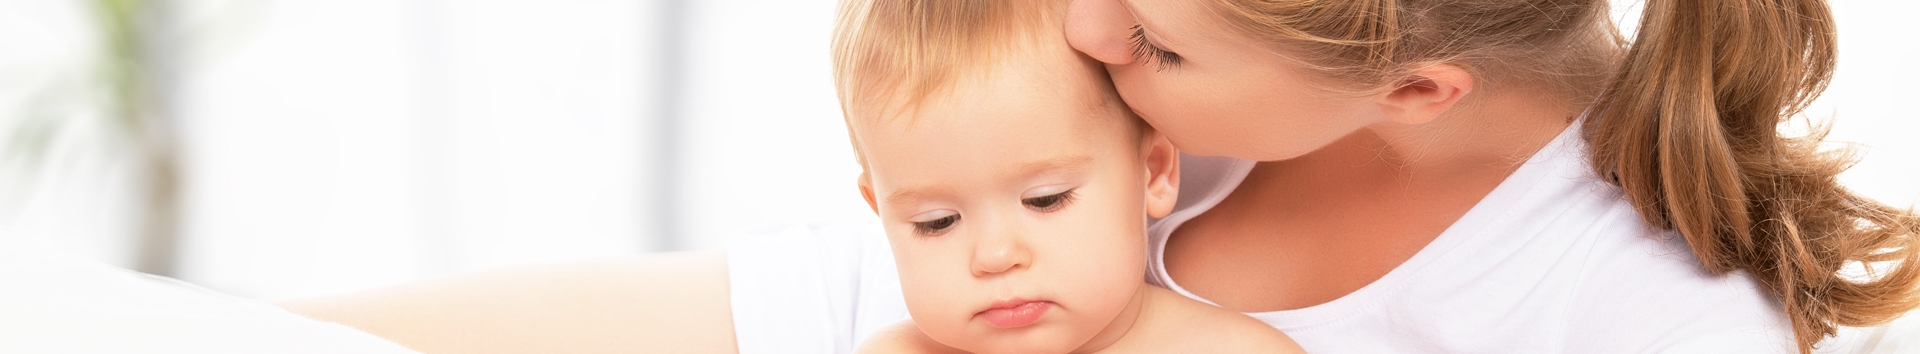 9 erros mais comuns de mães iniciantes, segundo os pediatras